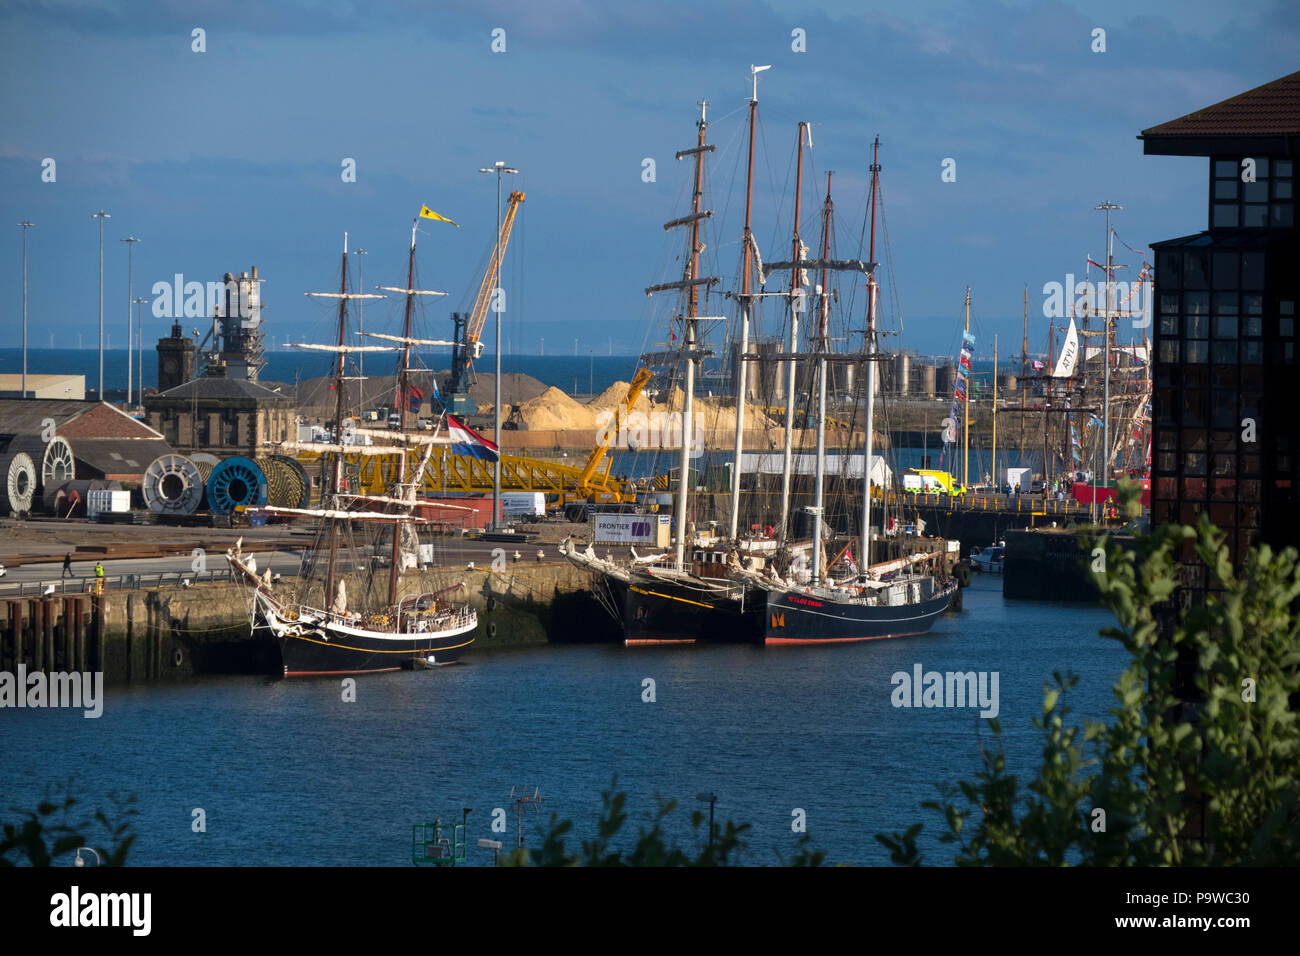 Tall ships in Sunderland dock UK Stock Photo